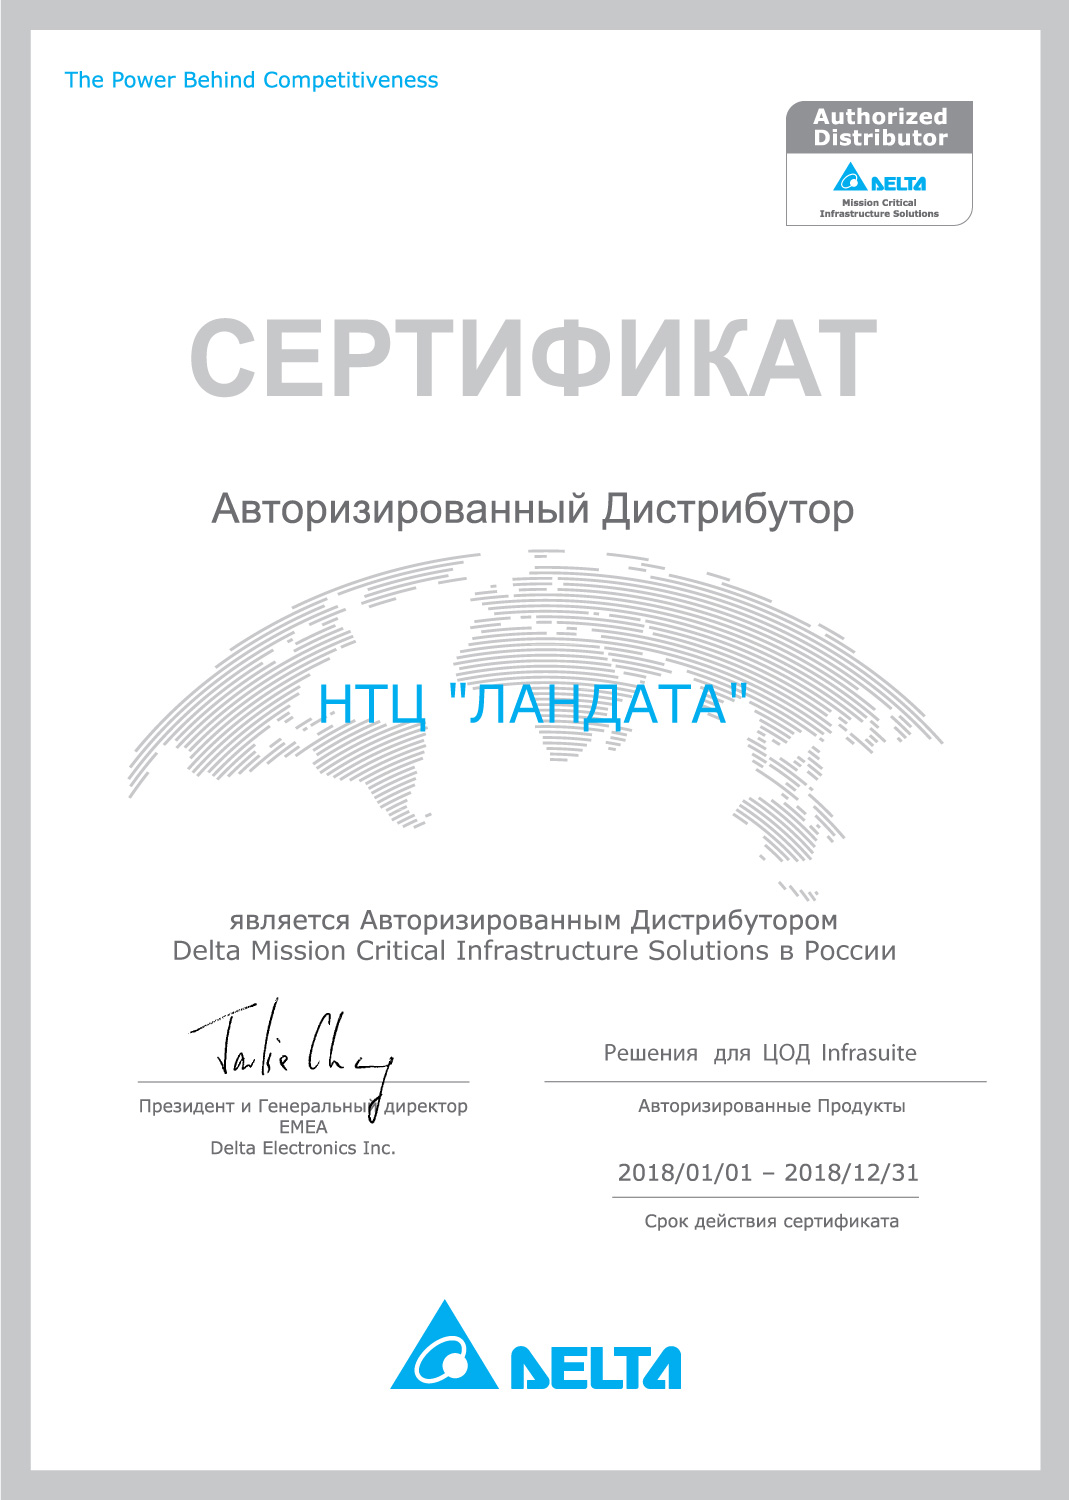 Сертификат подтверждает ,что компания Landata является ведущим дистрибьютором Eaton по объемам поставок источников бесперебойного питания